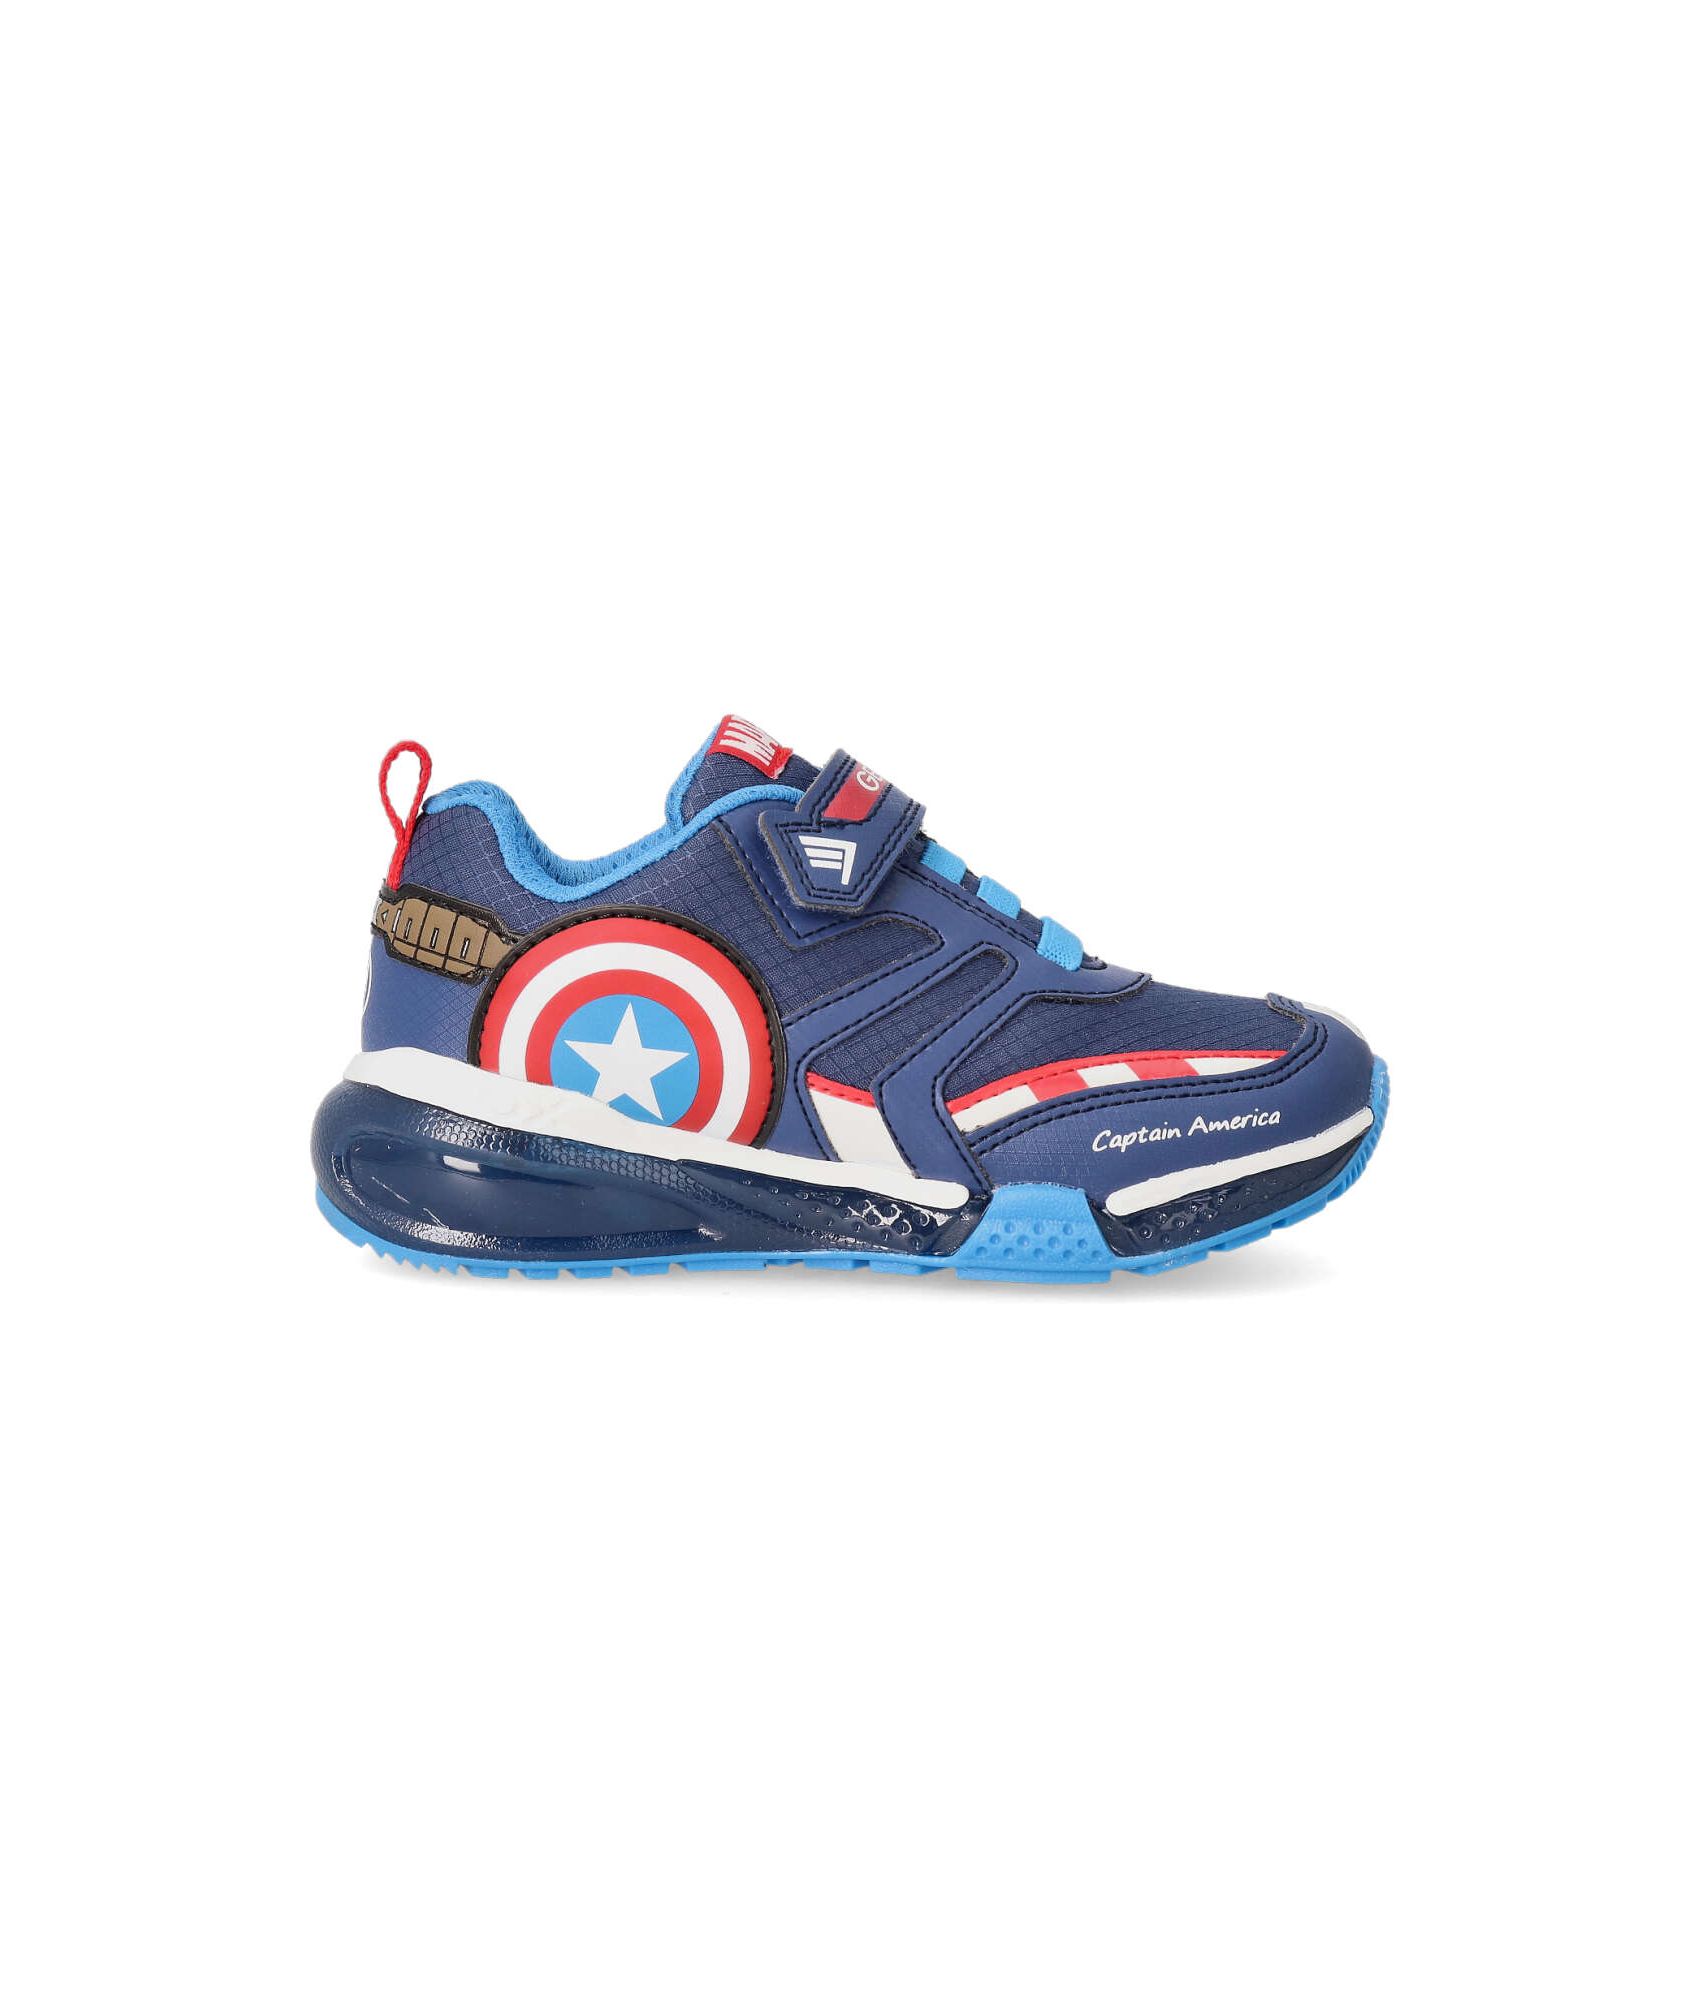 Zapatillas Geox Captain America con Luces - Diseño Activo para Niños